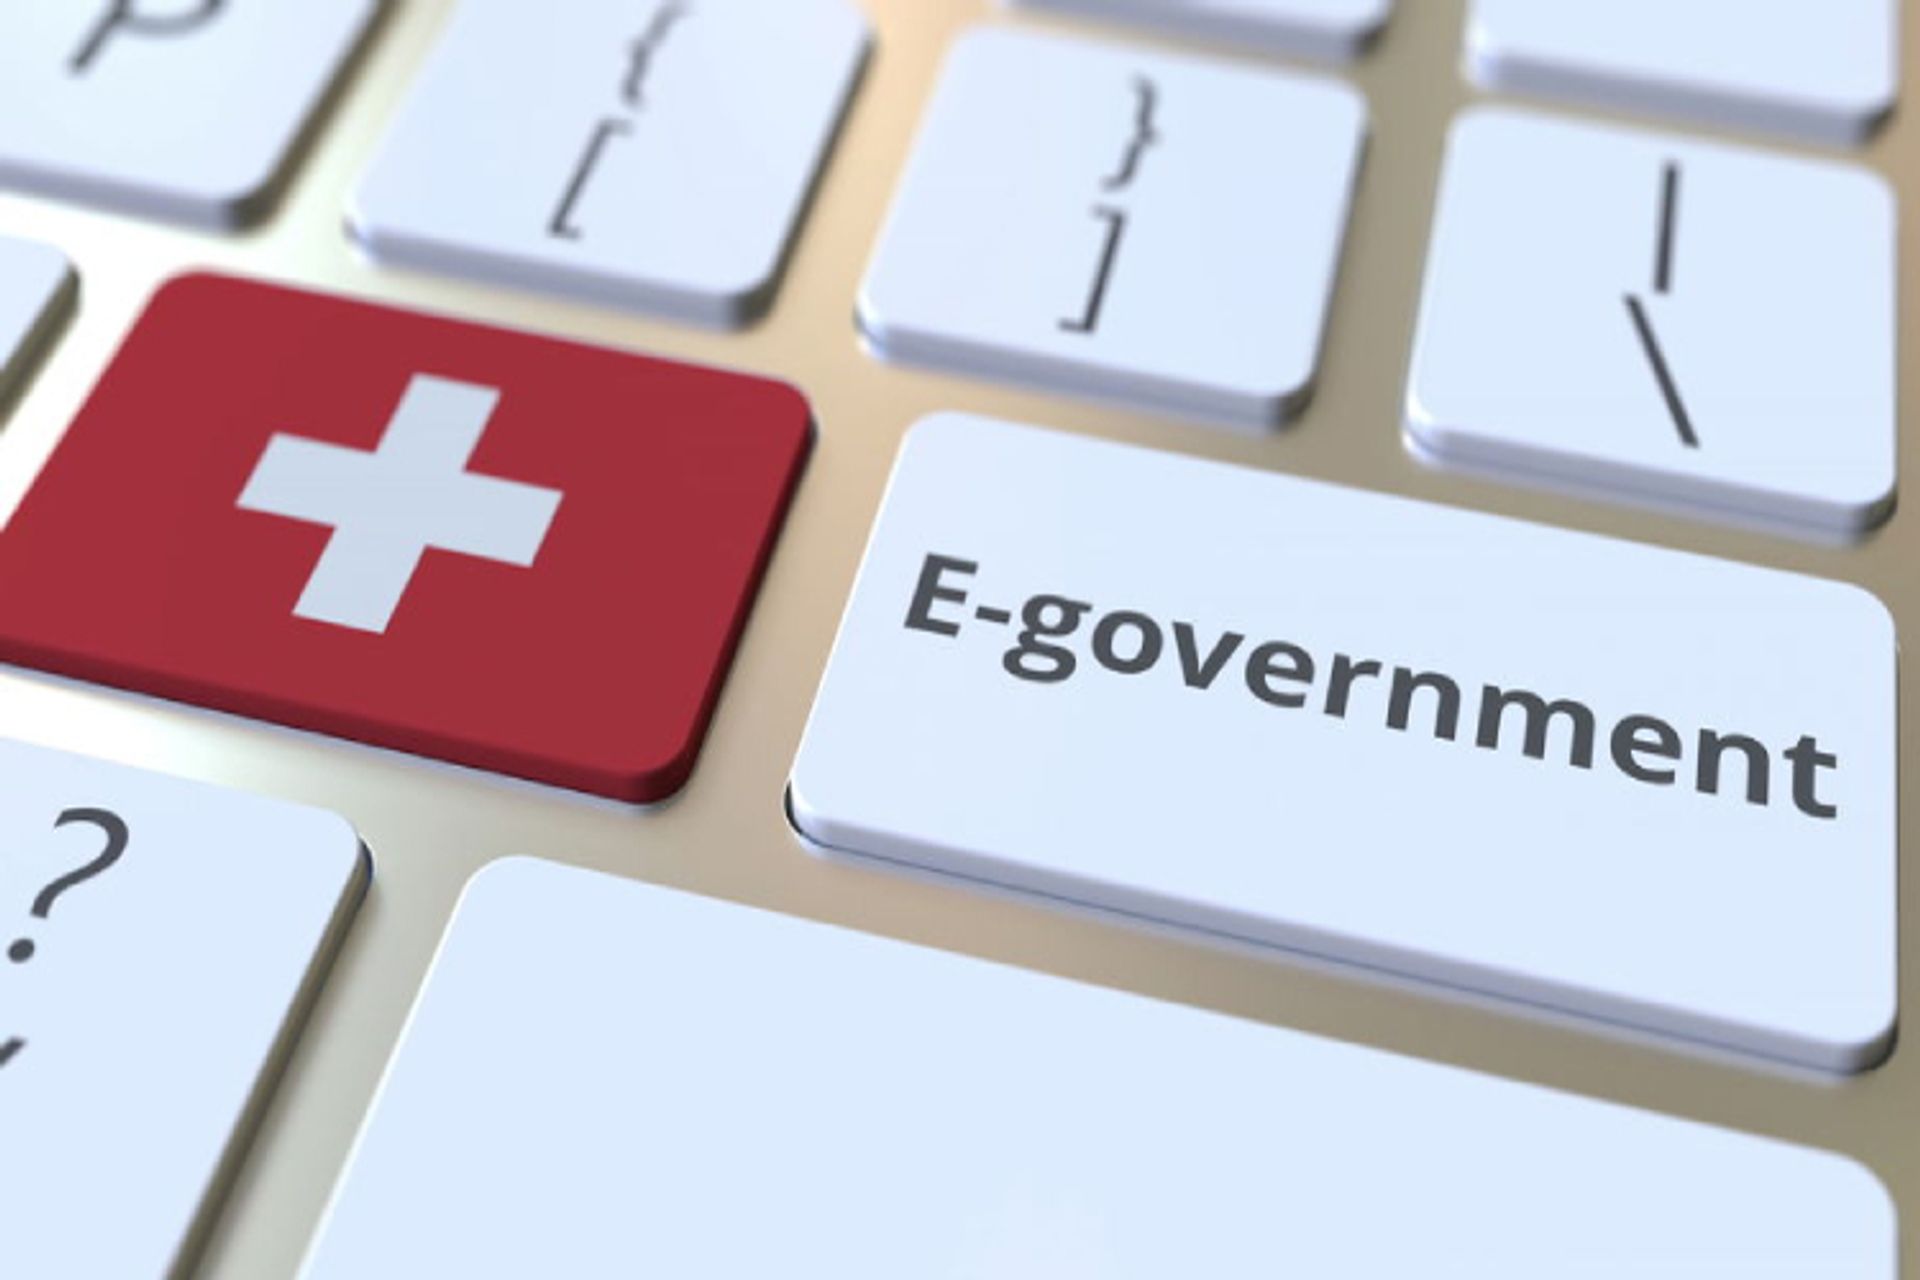 کنفدراسیون سوئیس تاکید زیادی بر پروژه مدیریت فدرال دیجیتال دارد